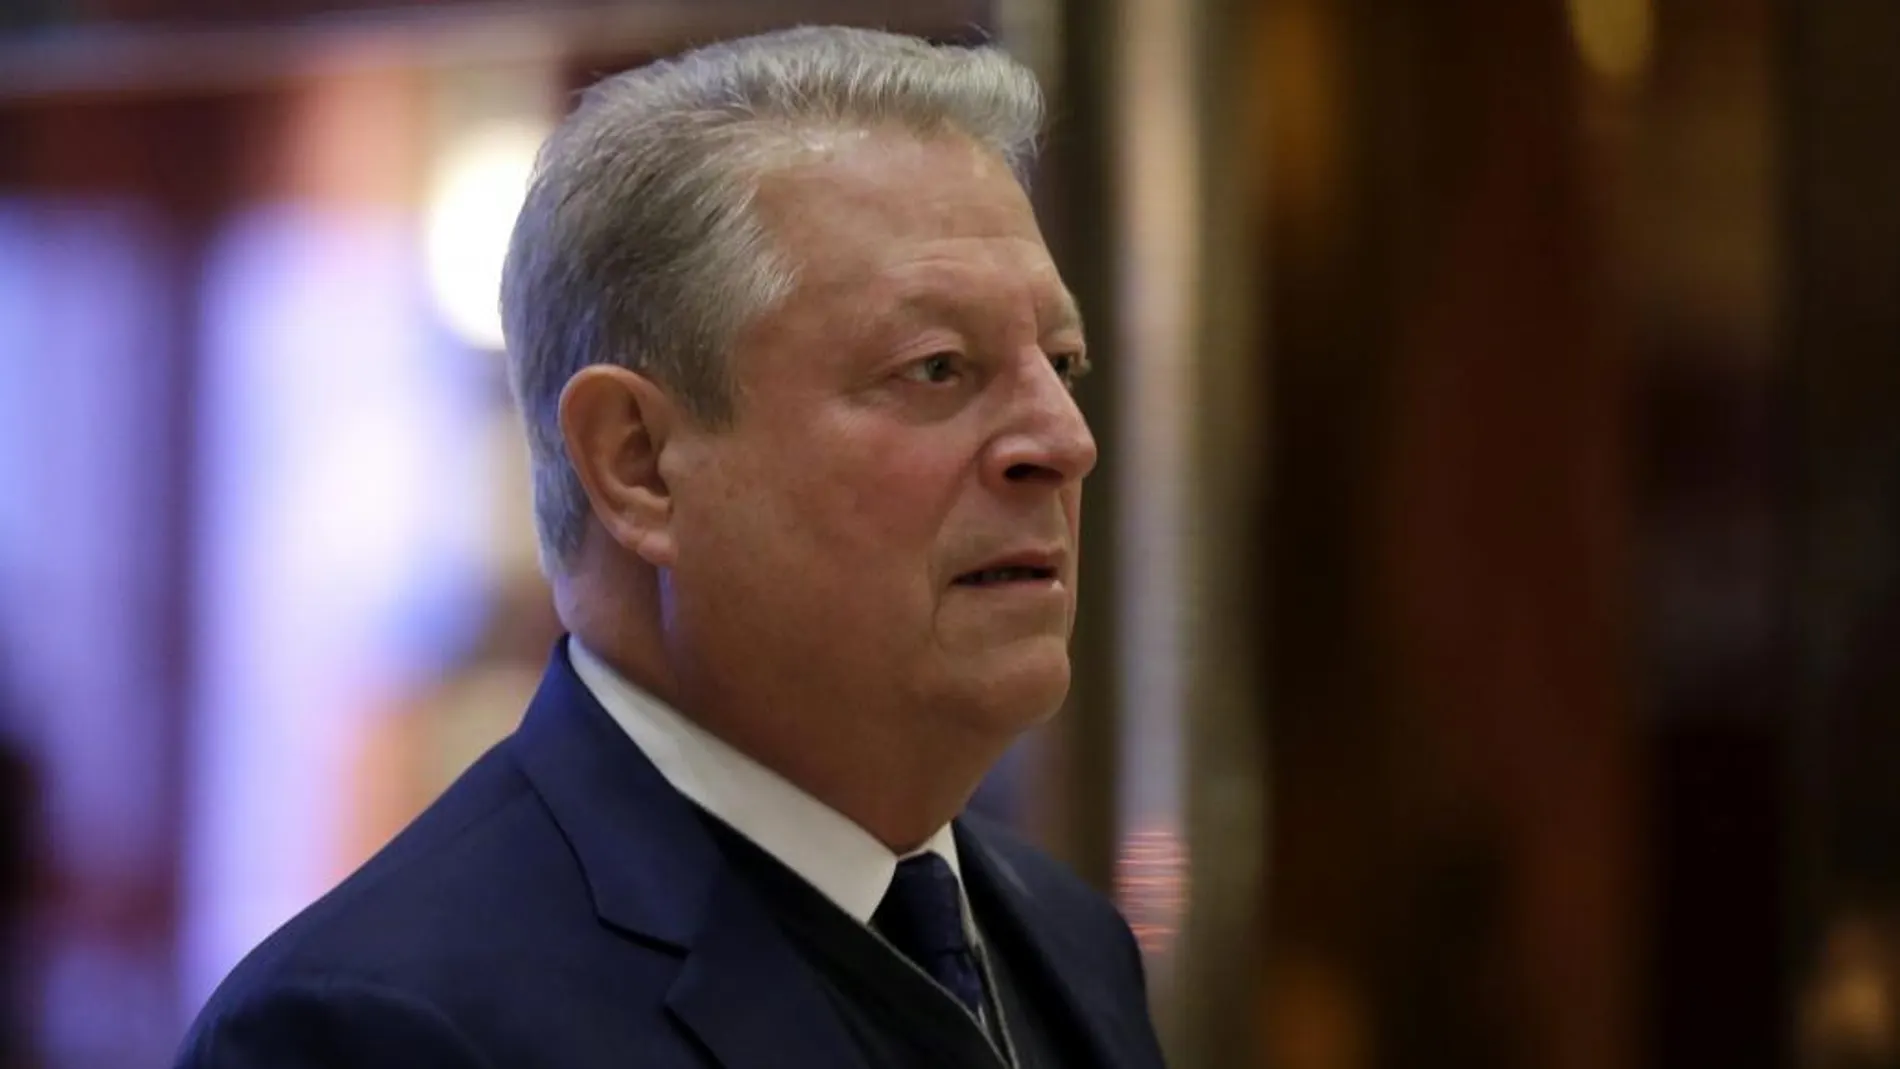 El ex vicepresidente estadounidense, Al Gore a su llegada a la Trump Tower de Nueva York, Estados Unidos hoy 5 de diciembre de 2016 para encontrarse con la hija de Donald Trump, Ivanka para discutir sobre tema medioambientales